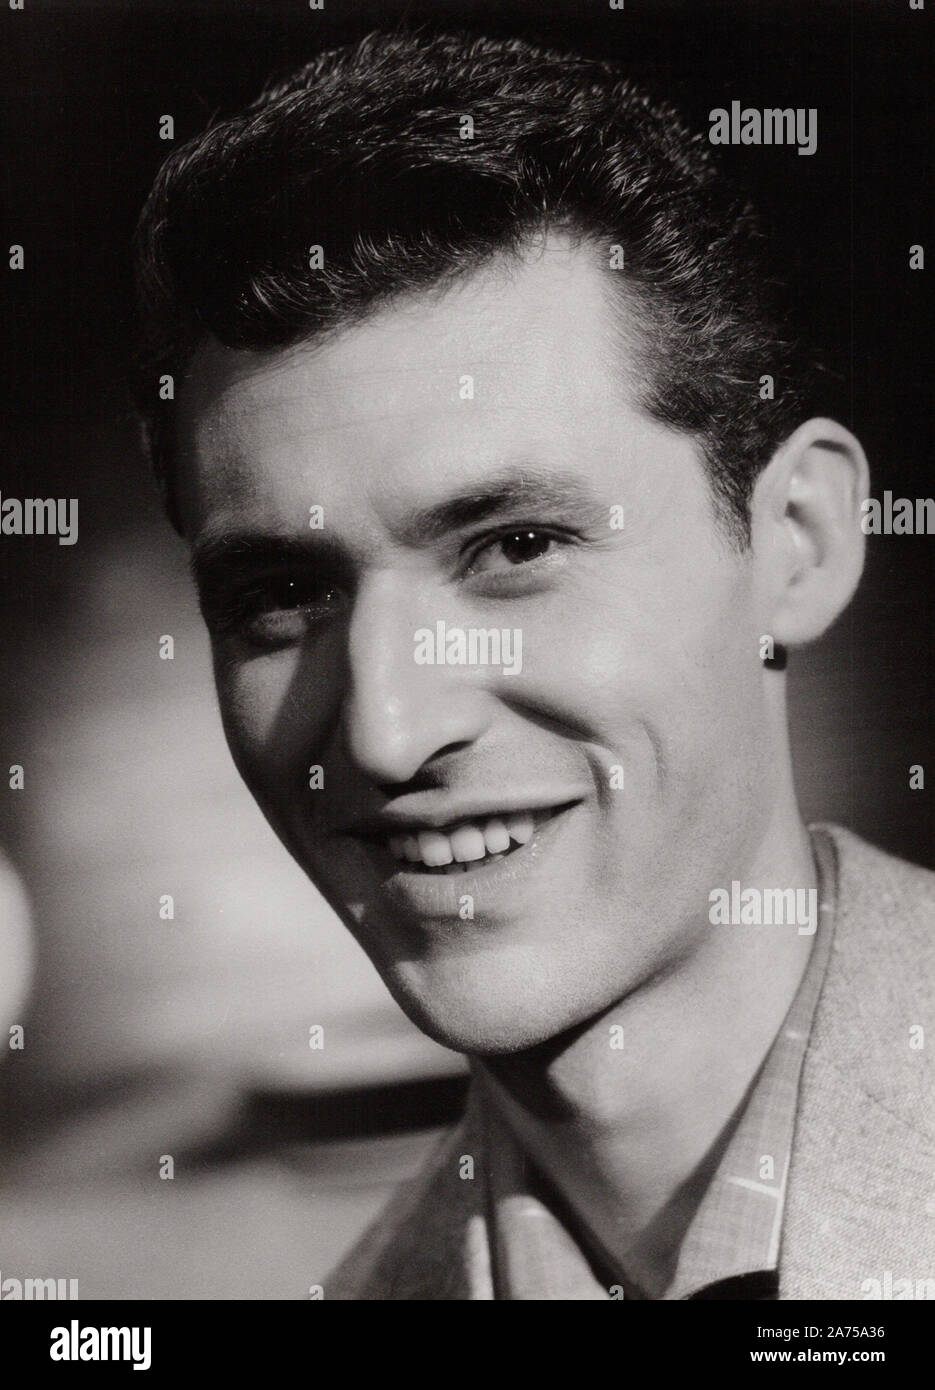 Silvio Francesco, italienischer Unterhaltungskünstler, Deutschland 1950er Jahre. Italienische entertainer Silvio Francesco, Deutschland 1950. Stockfoto